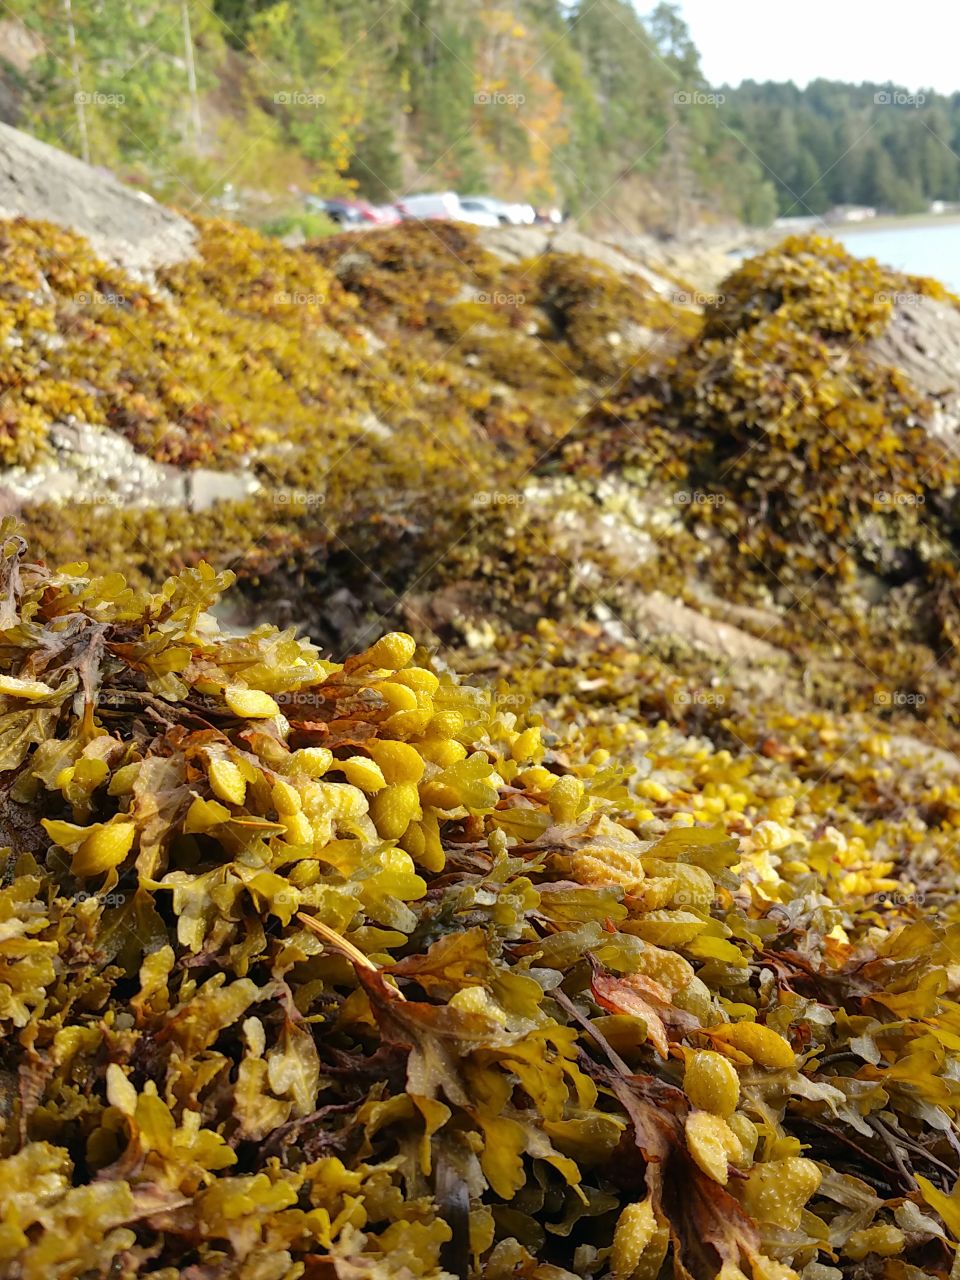 yellow seaweed on rock